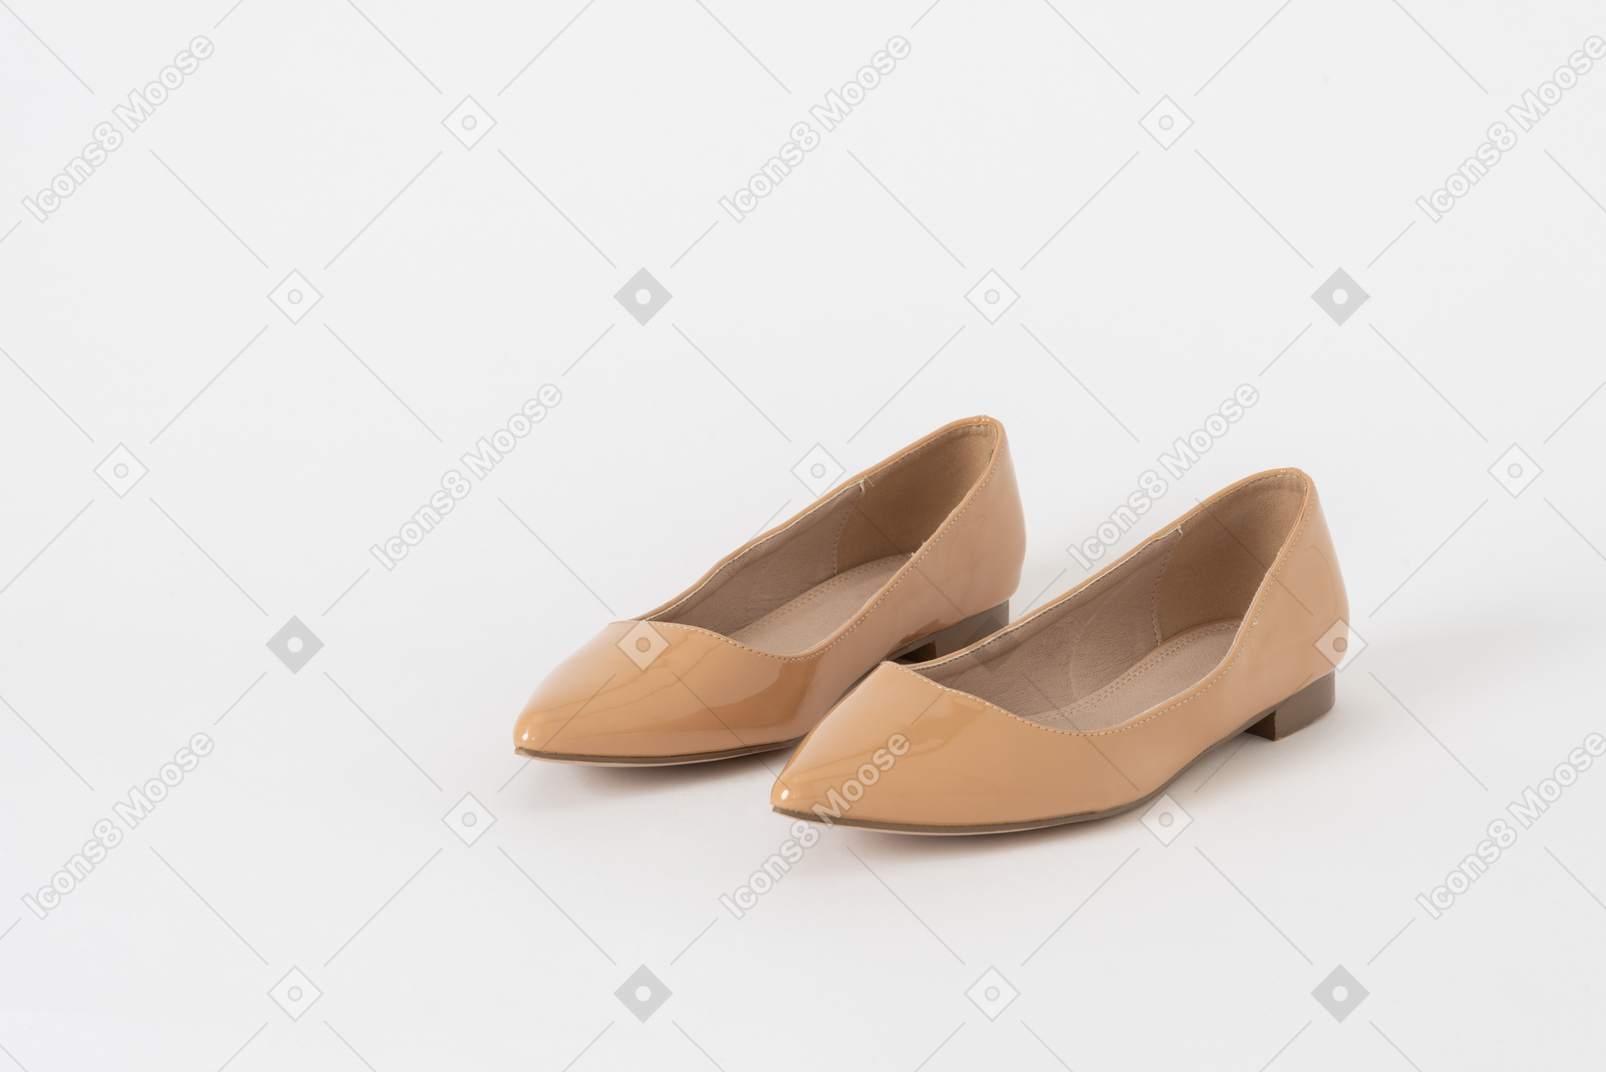 Coup de devant de trois quarts d'une paire de chaussures à talon bas en laque beige